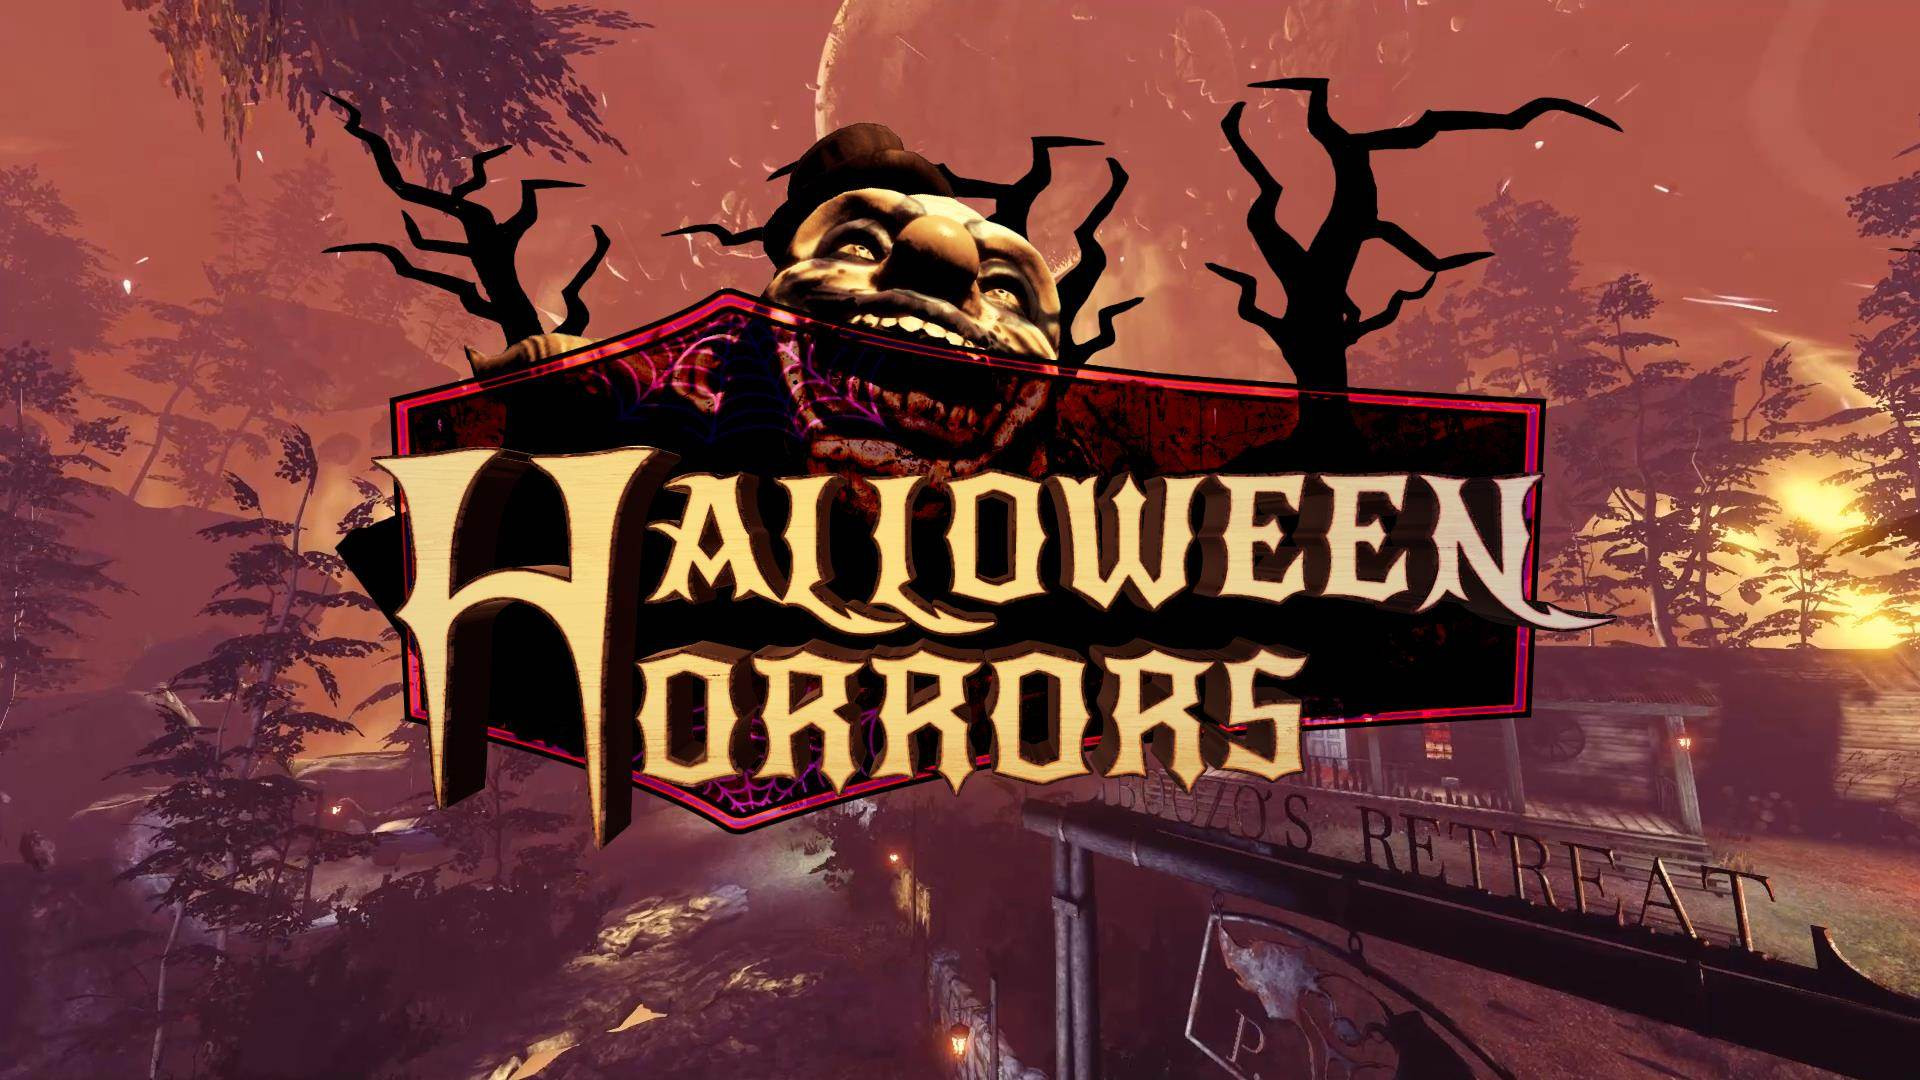 Killing Floor 2 Halloween 2019
 Killing Floor 2 "Halloween Horrors" Update für PS4 und